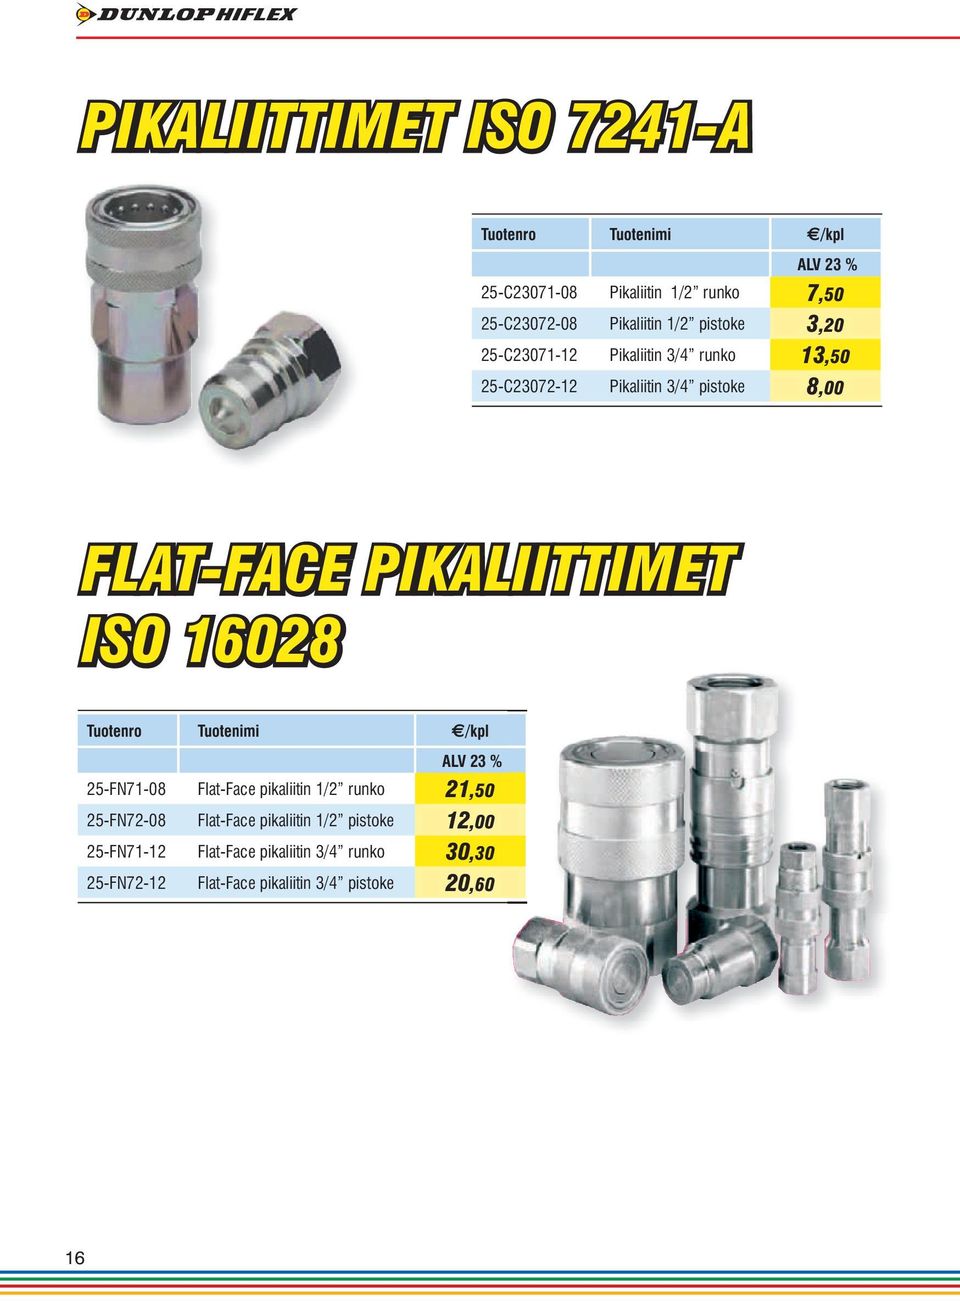 PIKALIITTIMET ISO 16028 Tuotenro Tuotenimi /kpl 25-FN71-08 Flat-Face pikaliitin 1/2 runko 21,50 25-FN72-08 Flat-Face